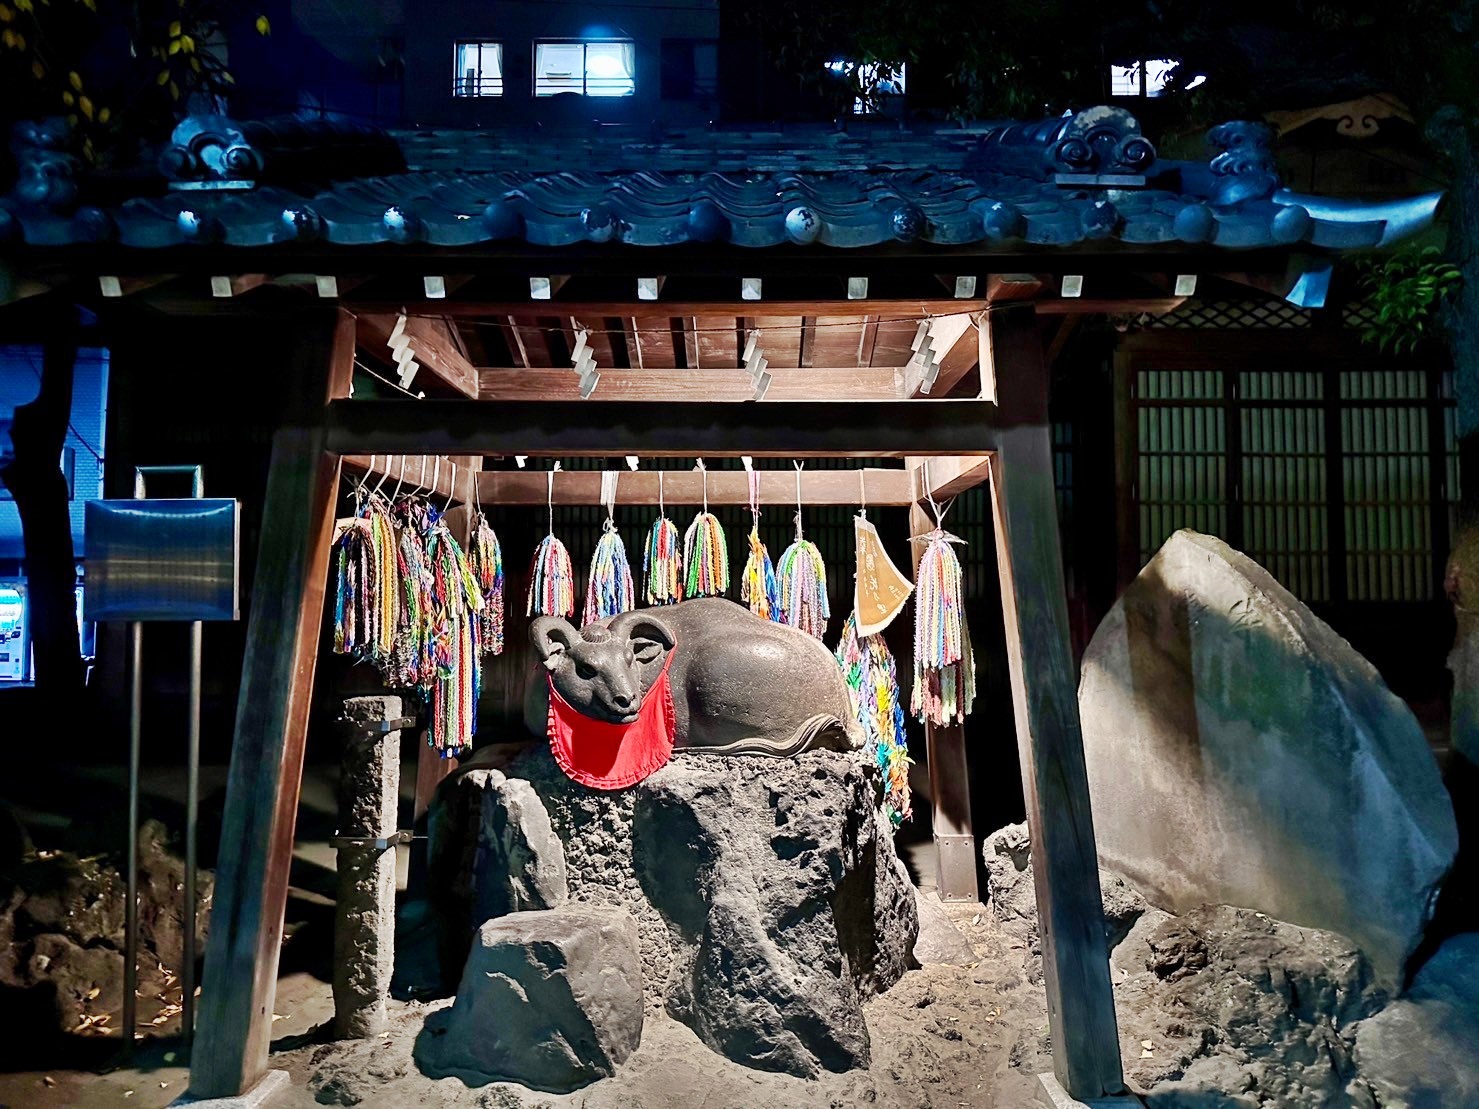 【日本】 東京晴空塔 牛嶋神社｜晴空塔周邊景點 罕見三輪鳥居的古老神社，期間限定神社燈光展。